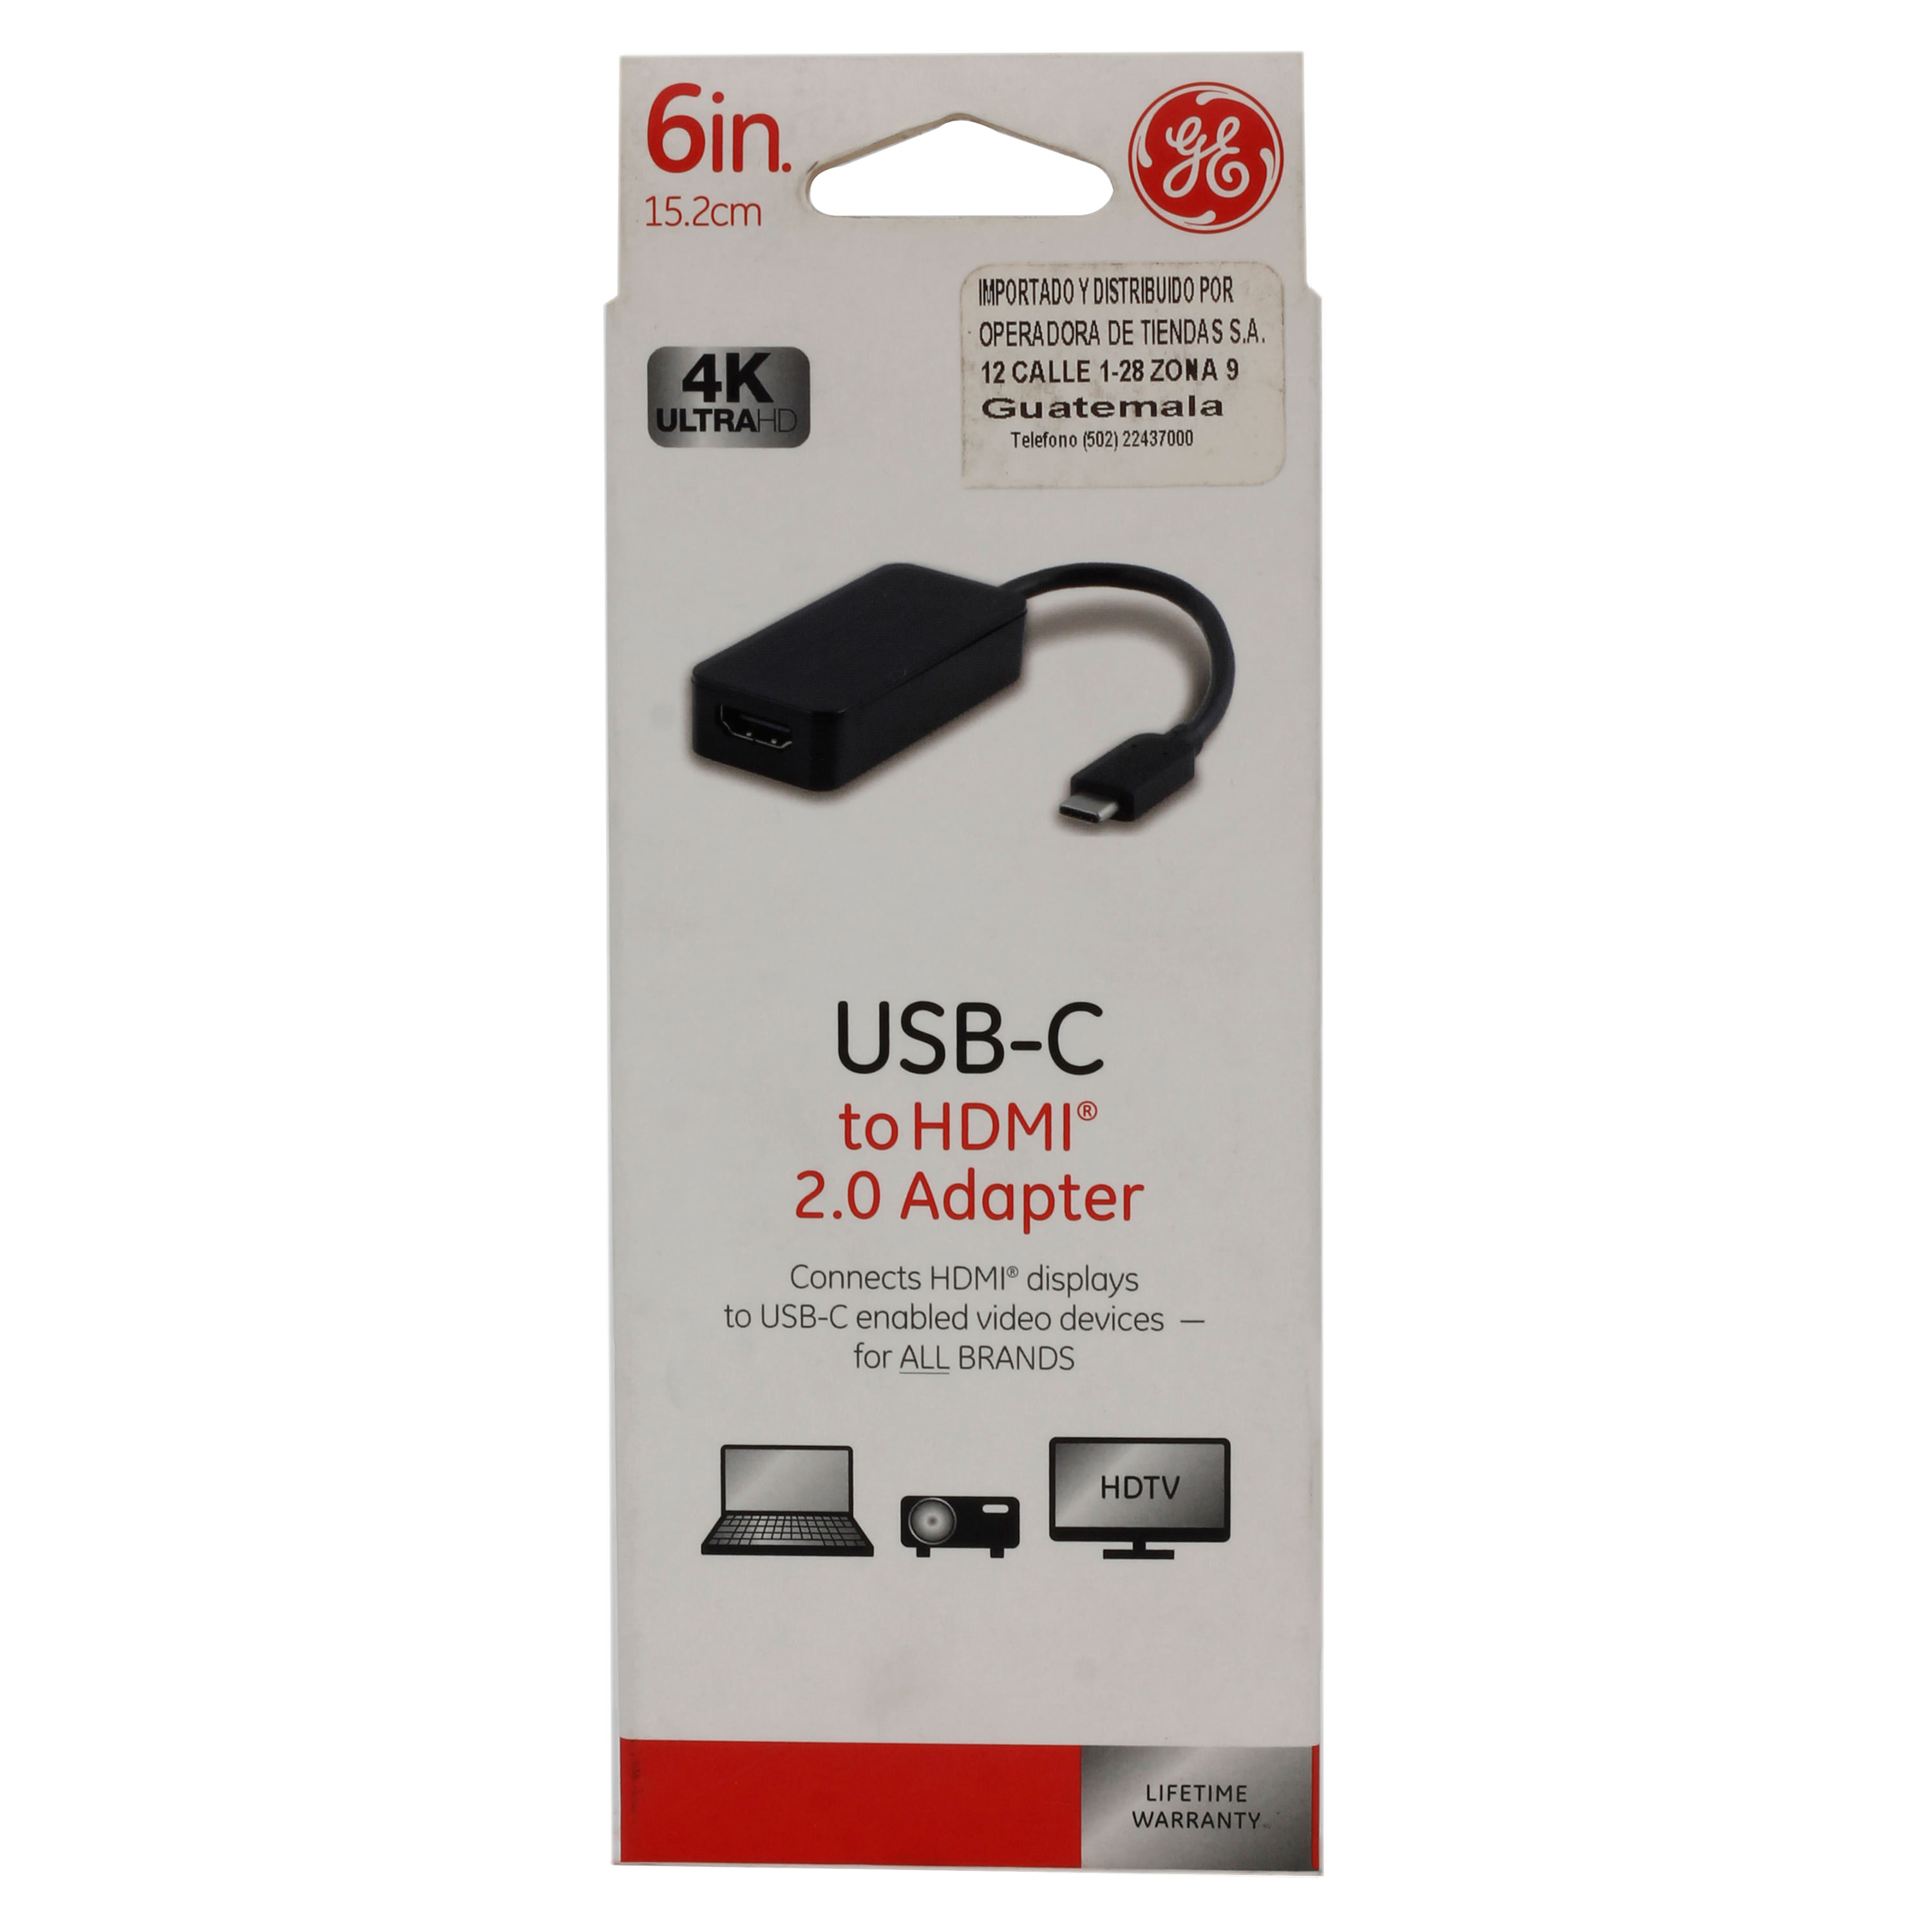 Pack Adaptador 4 en 1 USB C a HDMI 4K VGA USB 3.0 PD Carga y Cable HDMI 2.1  - Promart